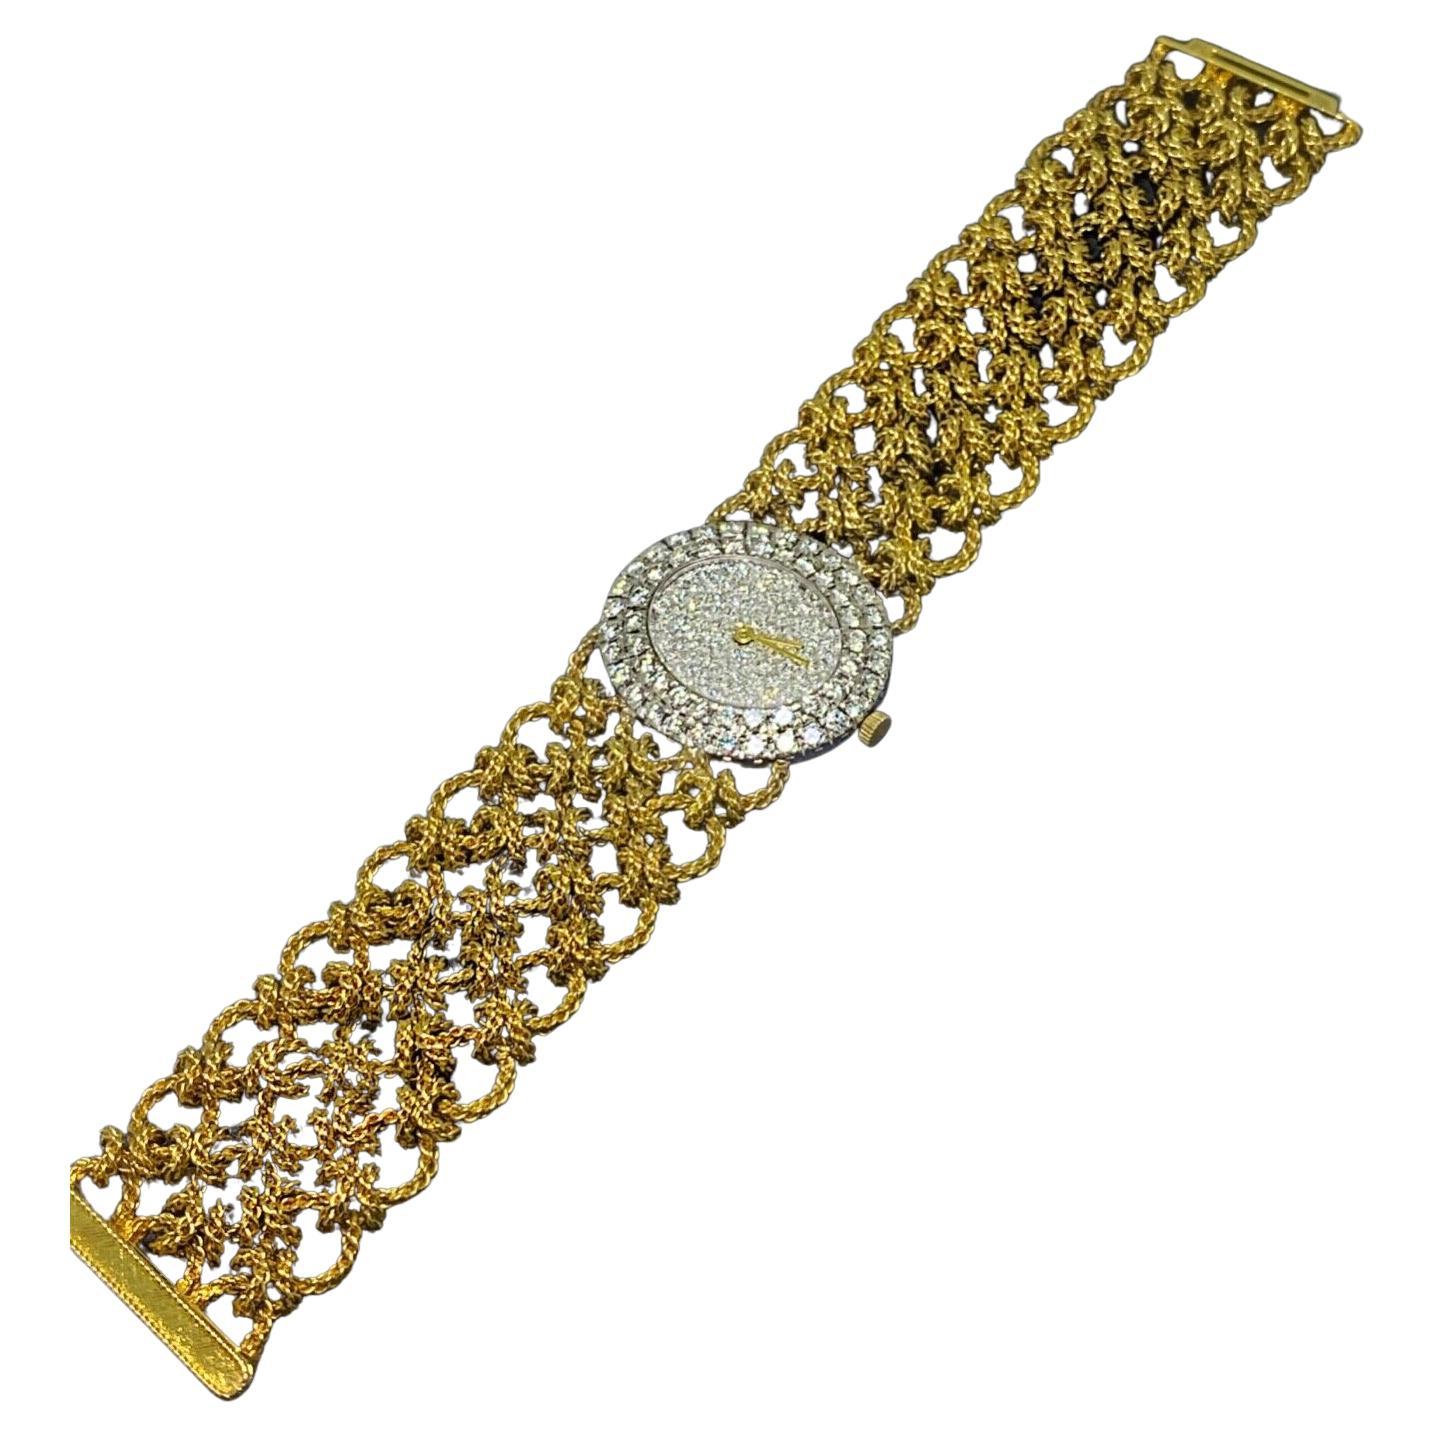 Bueche-Girod 18k Gold & 5.00 Diamond Knitted Bracelet Dress Watch, Ref Y 9801